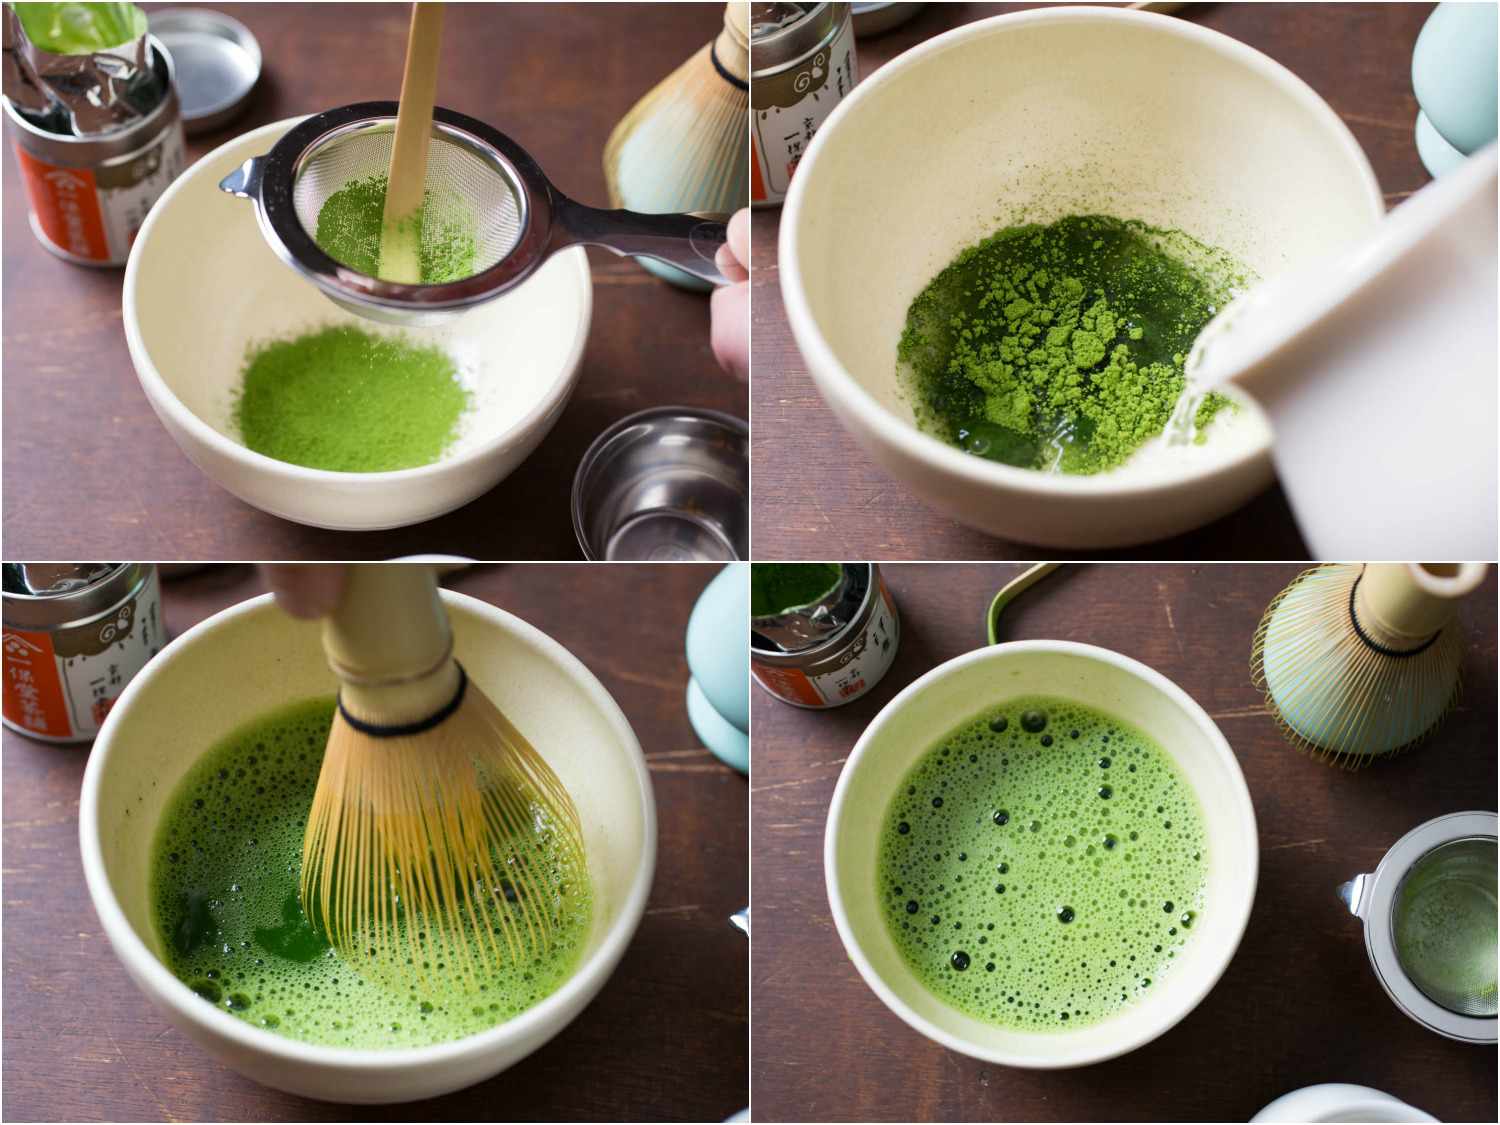 20150206 -茶-维姬-沃斯克-抹茶茶service.jpg